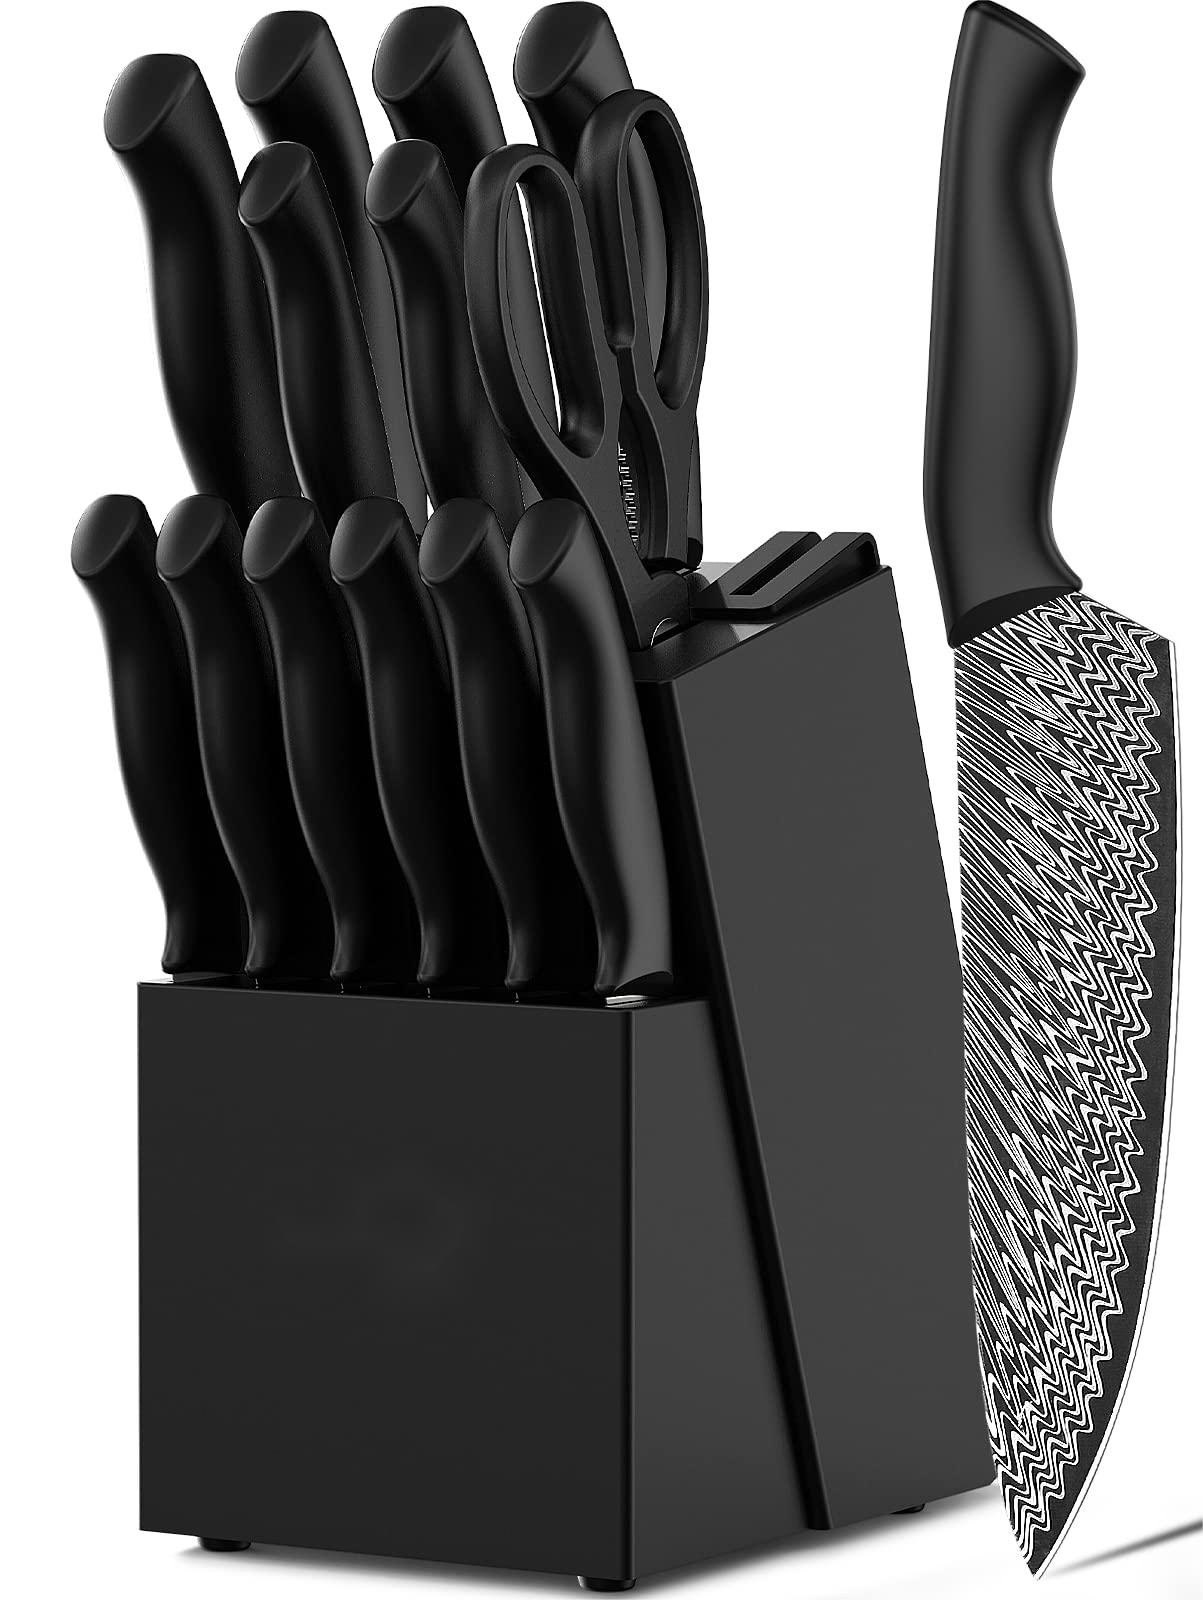 https://assets.wfcdn.com/im/70258238/compr-r85/2535/253509396/fish-hunter-15-piece-high-carbon-stainless-steel-knife-block-set.jpg